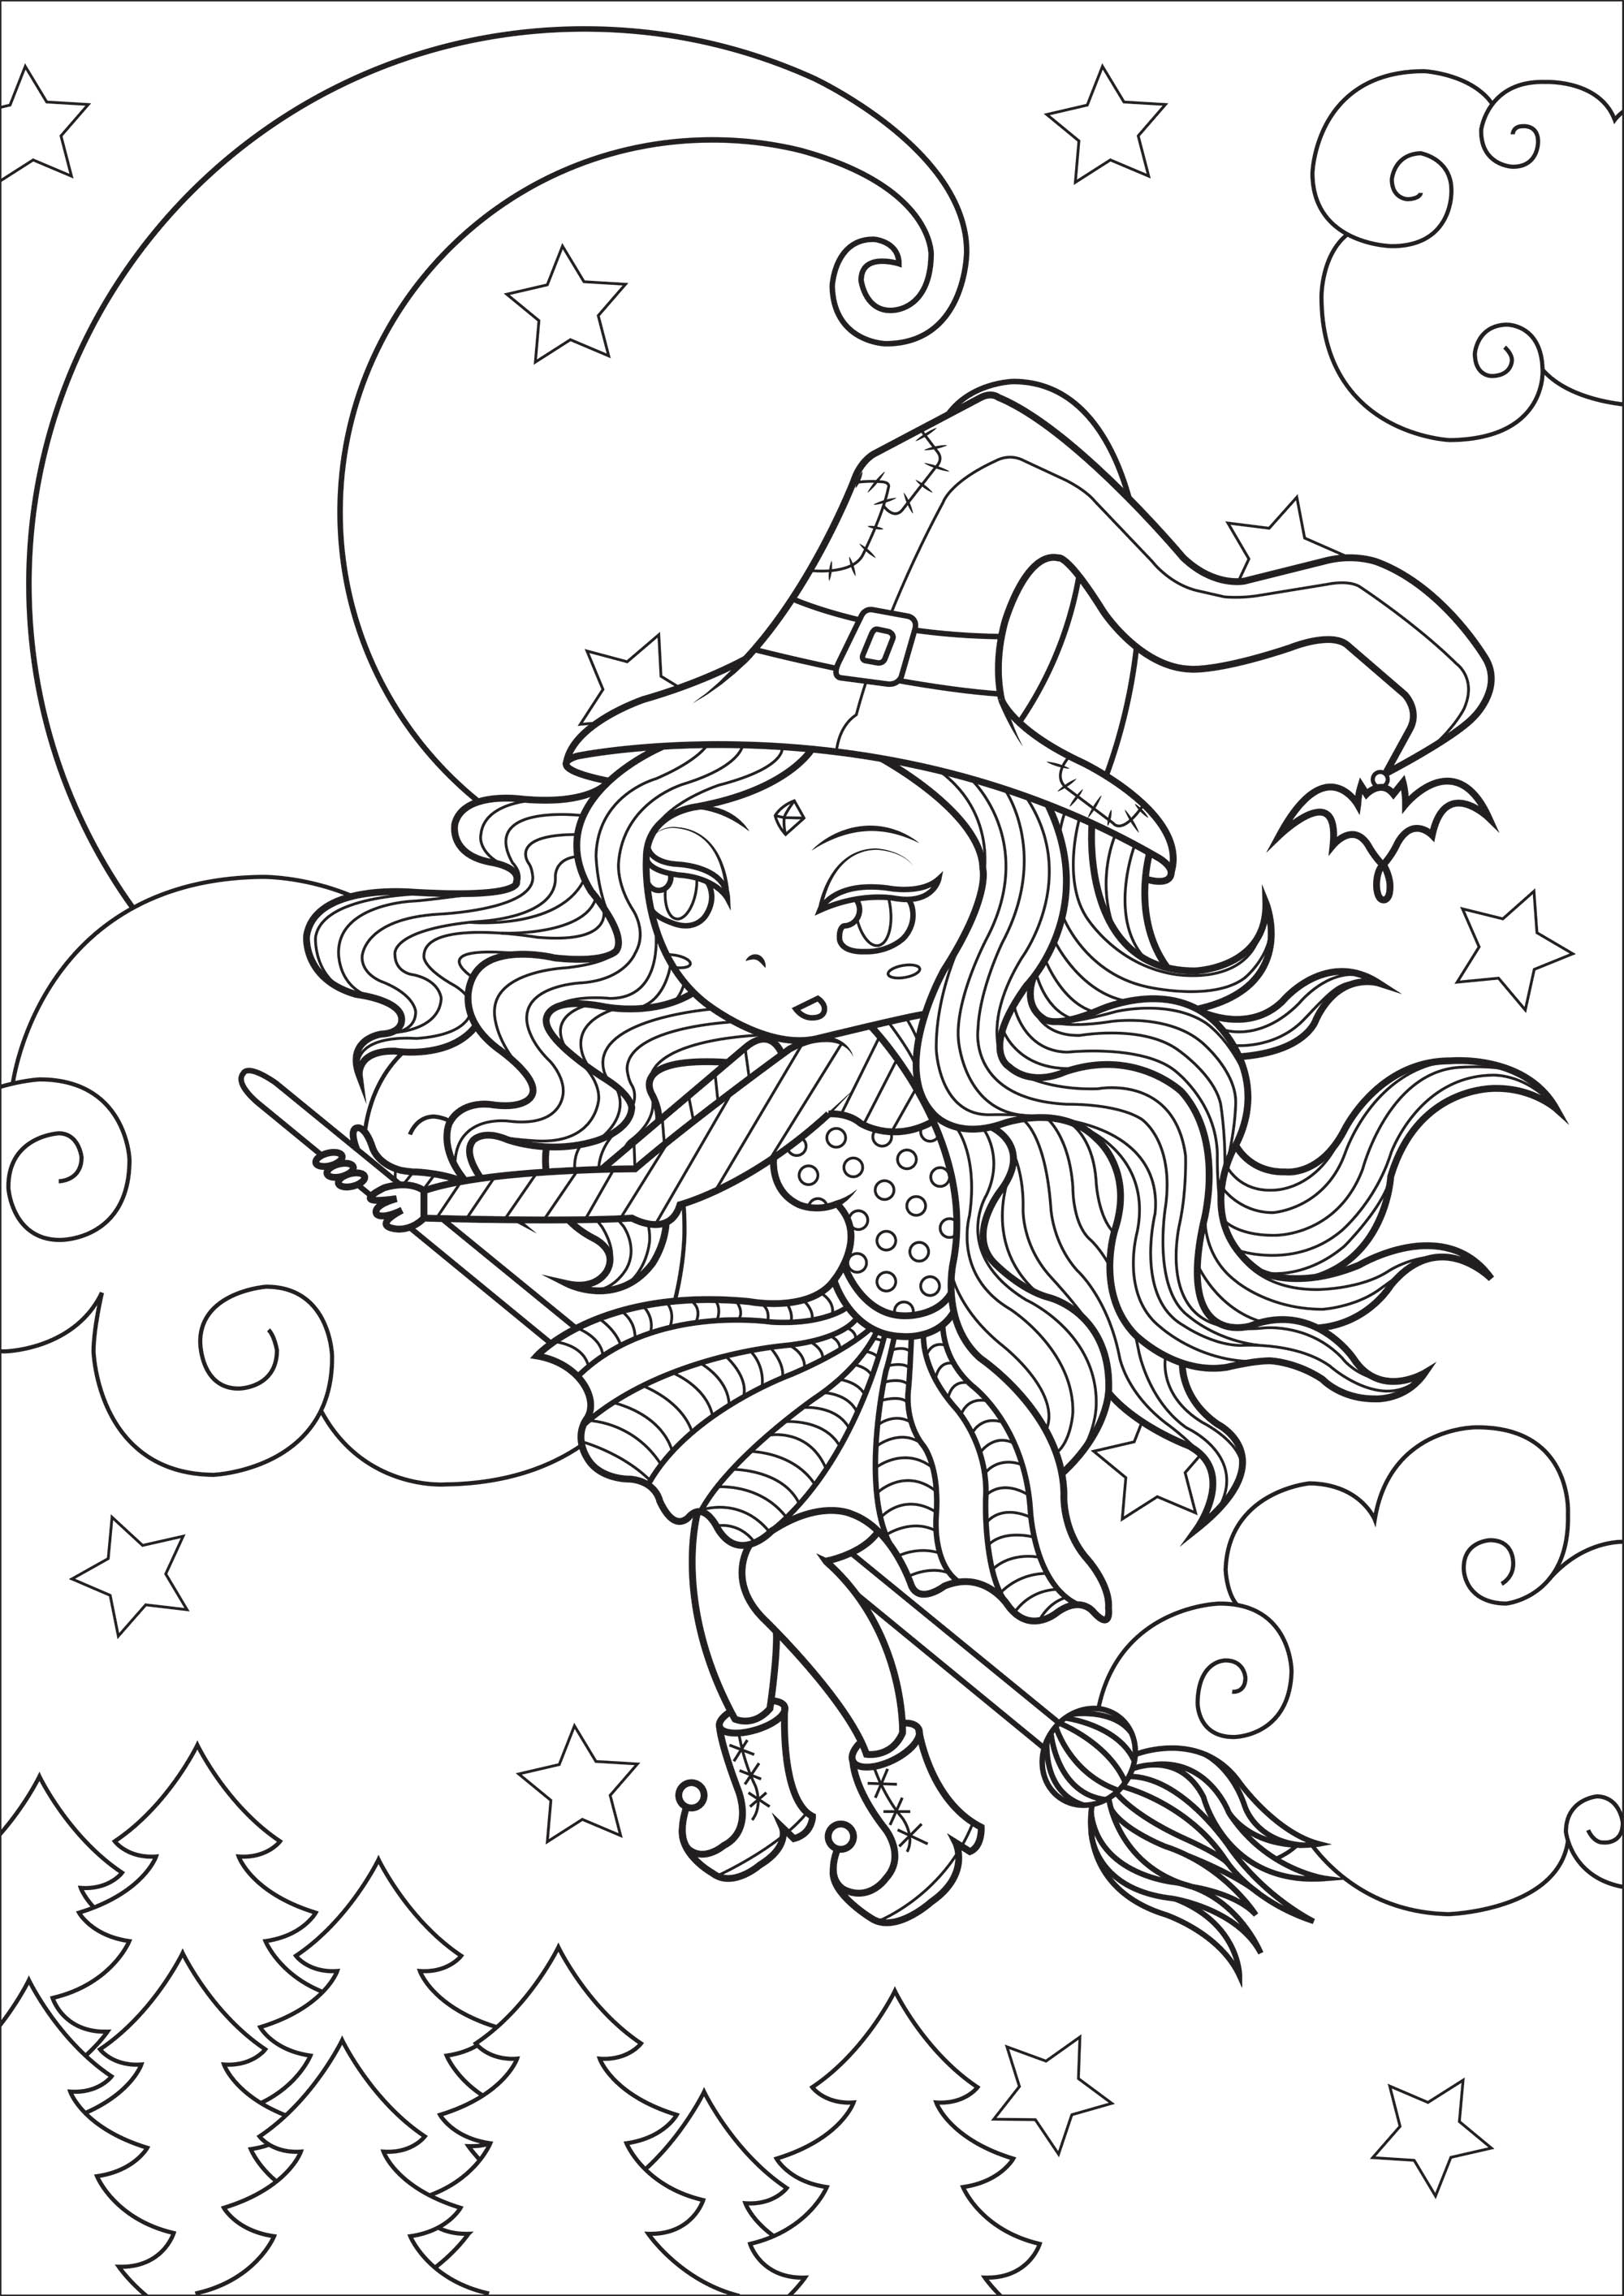 Sorcière en plein vol. Ce coloriage original représente une sorcière avec sa tenue bariolée et son chapeau pointu, en plein vol devant un ciel étoilé et une jolie lune.